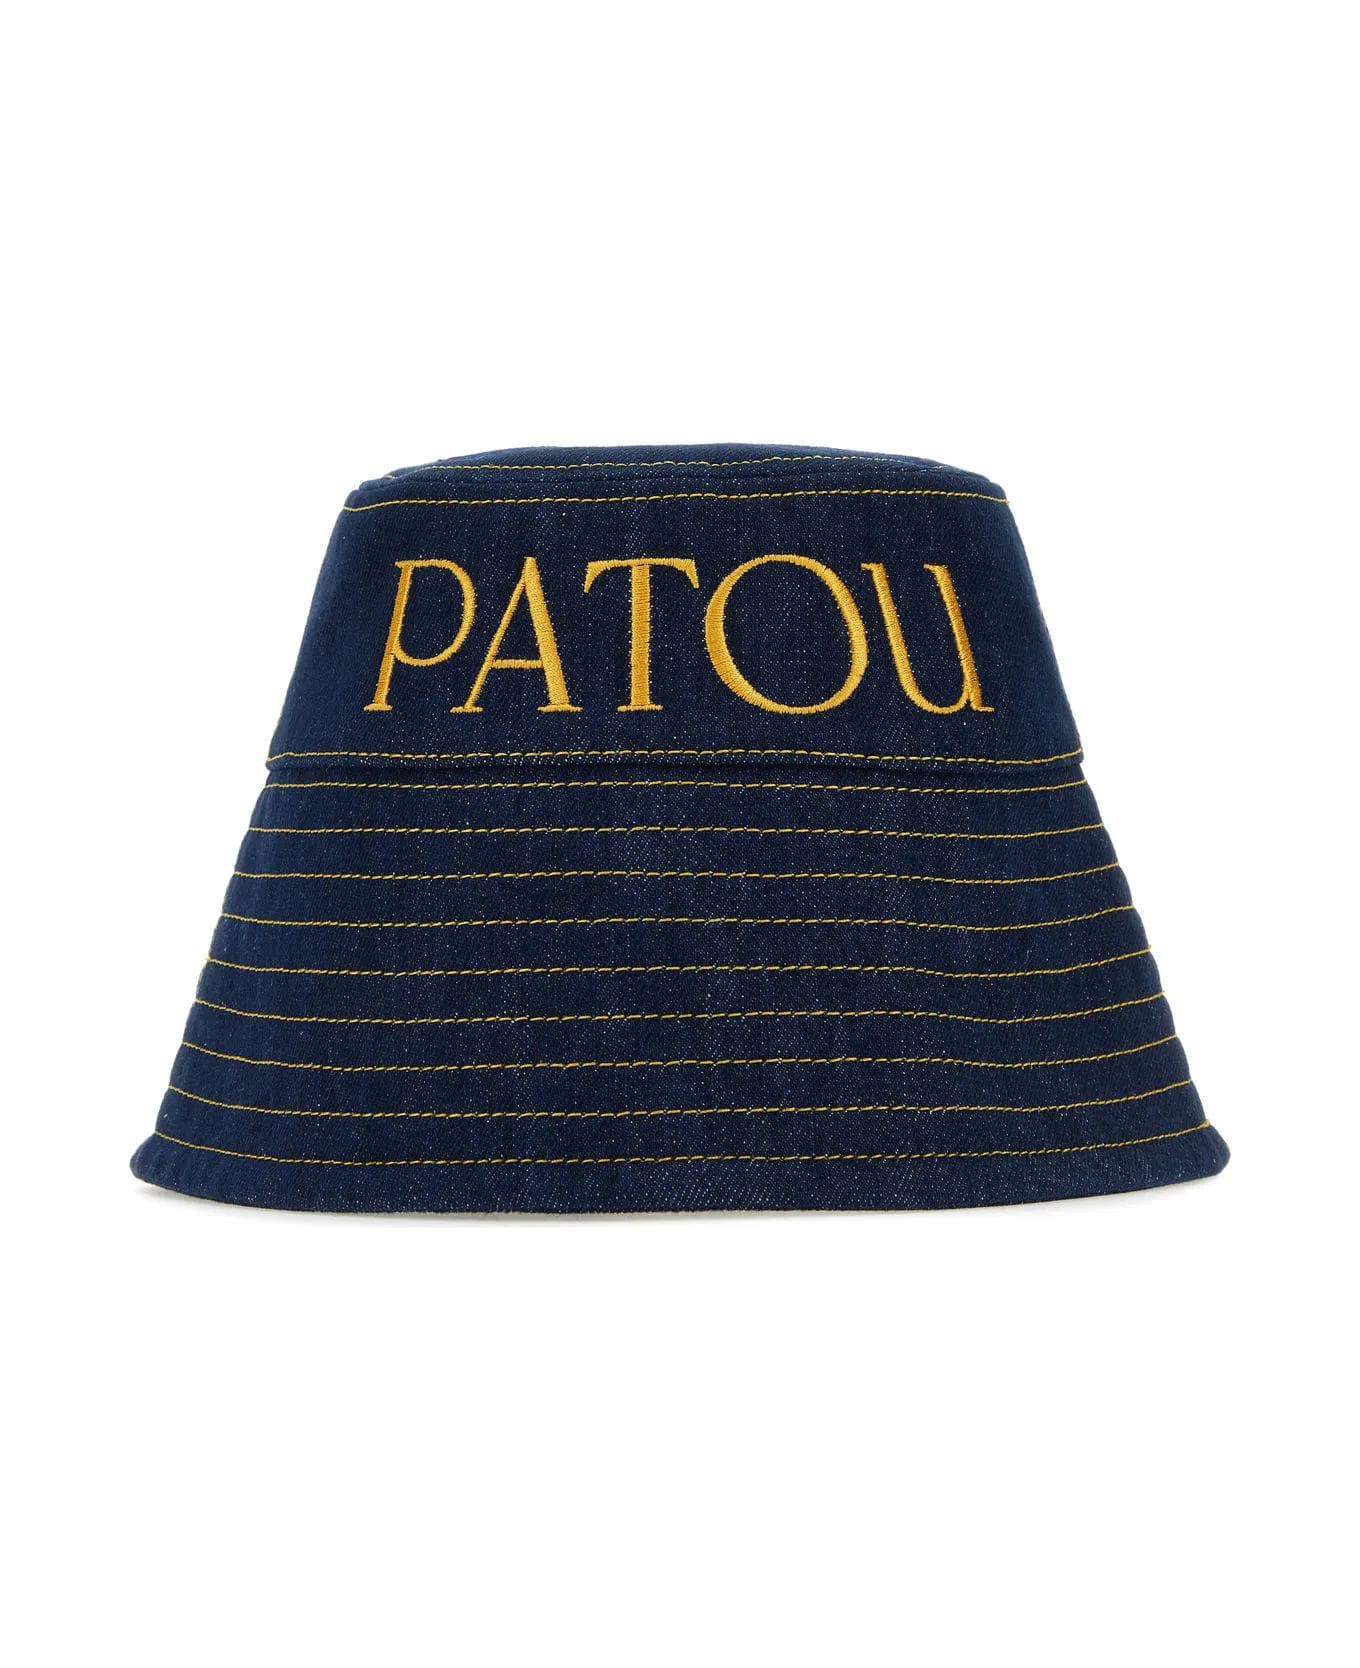 Patou Dark Blue Denim Hat - BLUE